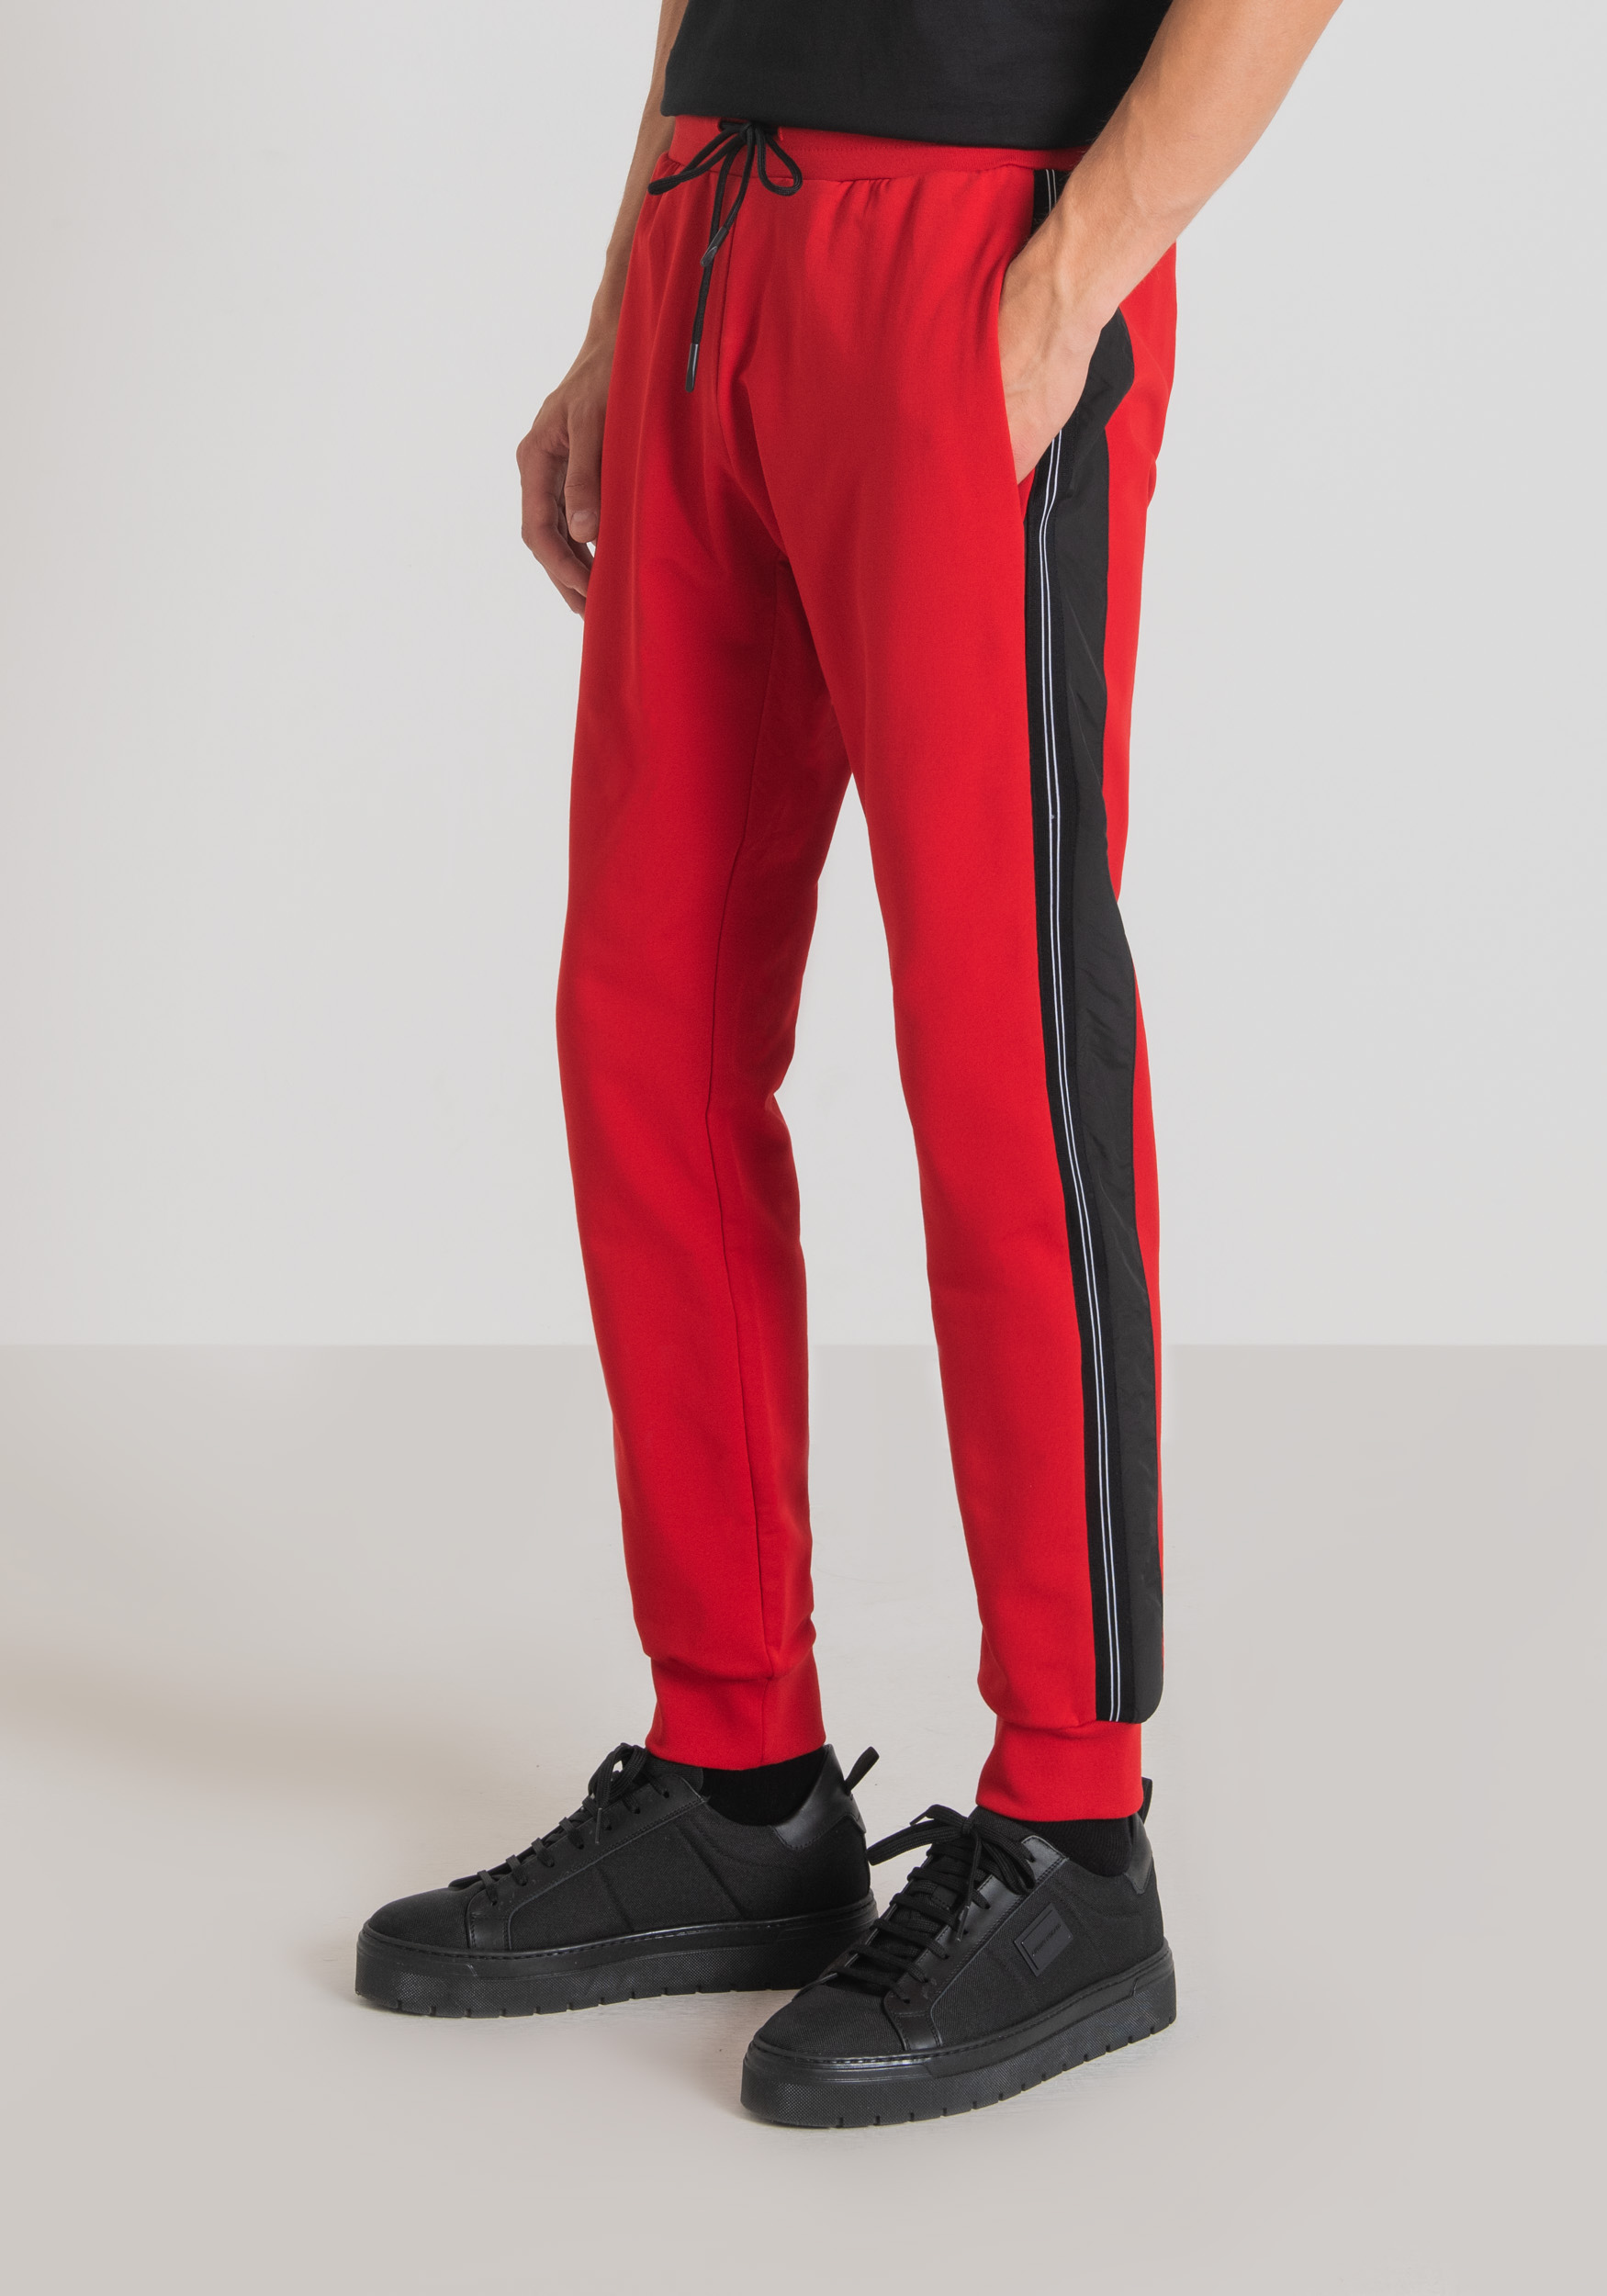 Antony Morato Pantalon Molletone Slim Fit En Coton Elastique Avec Element Contrastant En Tissu Technique Rouge | Homme Pantalons